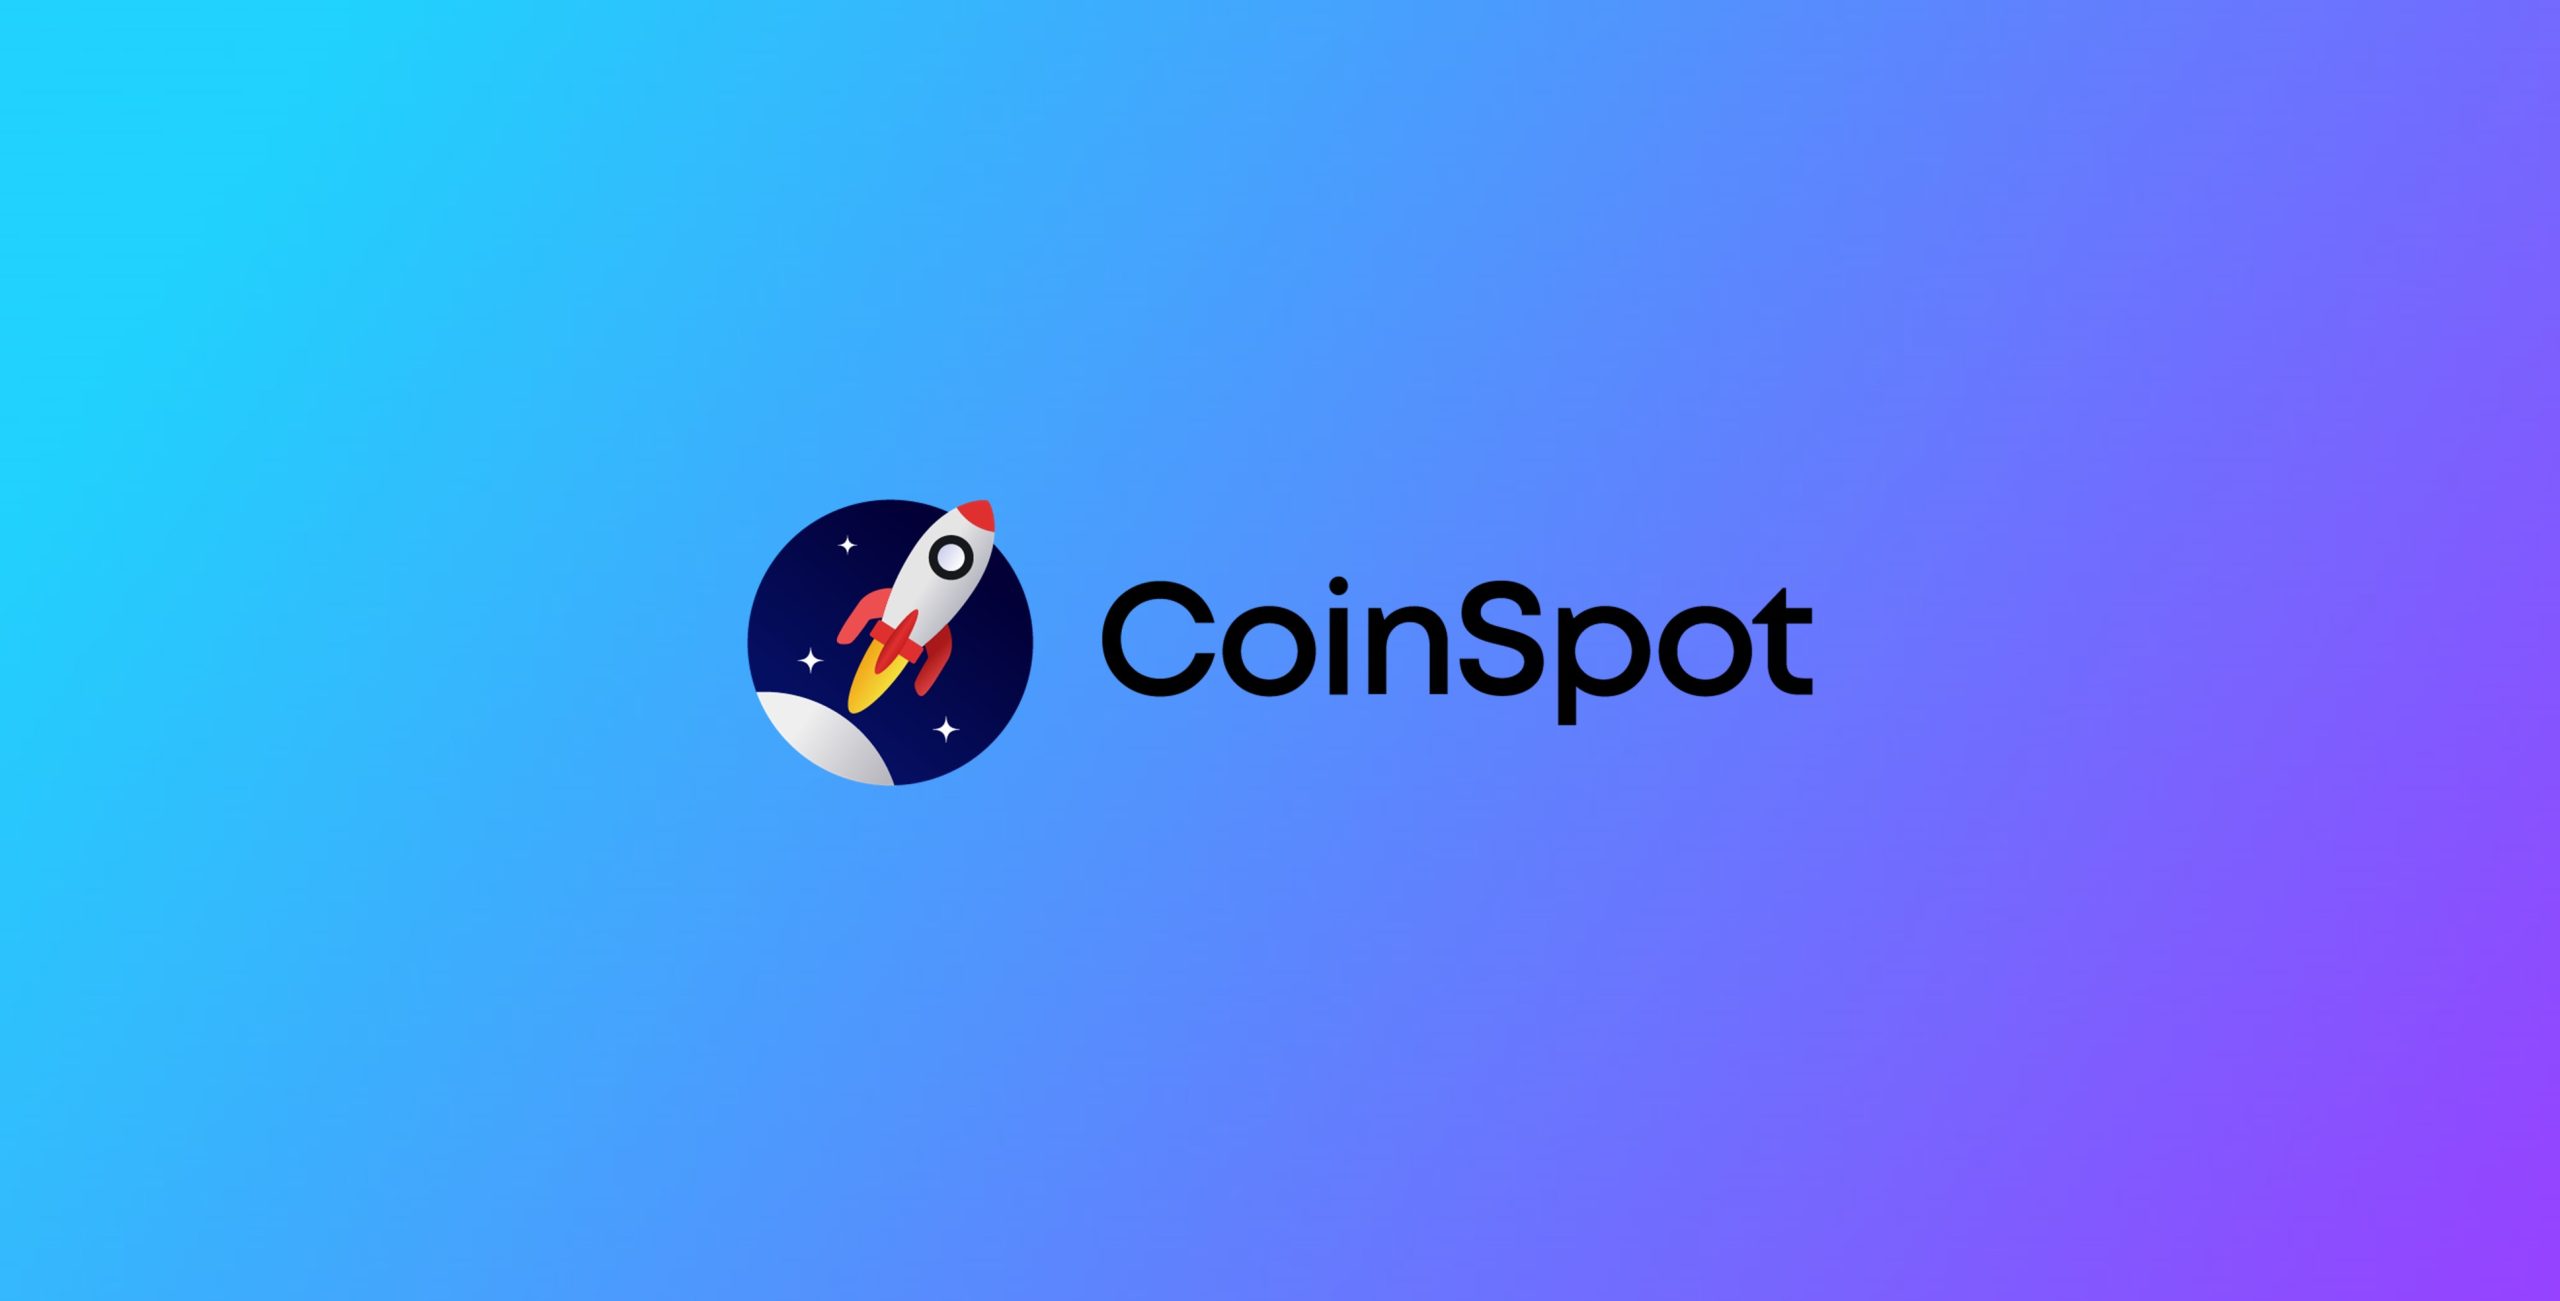 CoinSpot - Australian FinTech